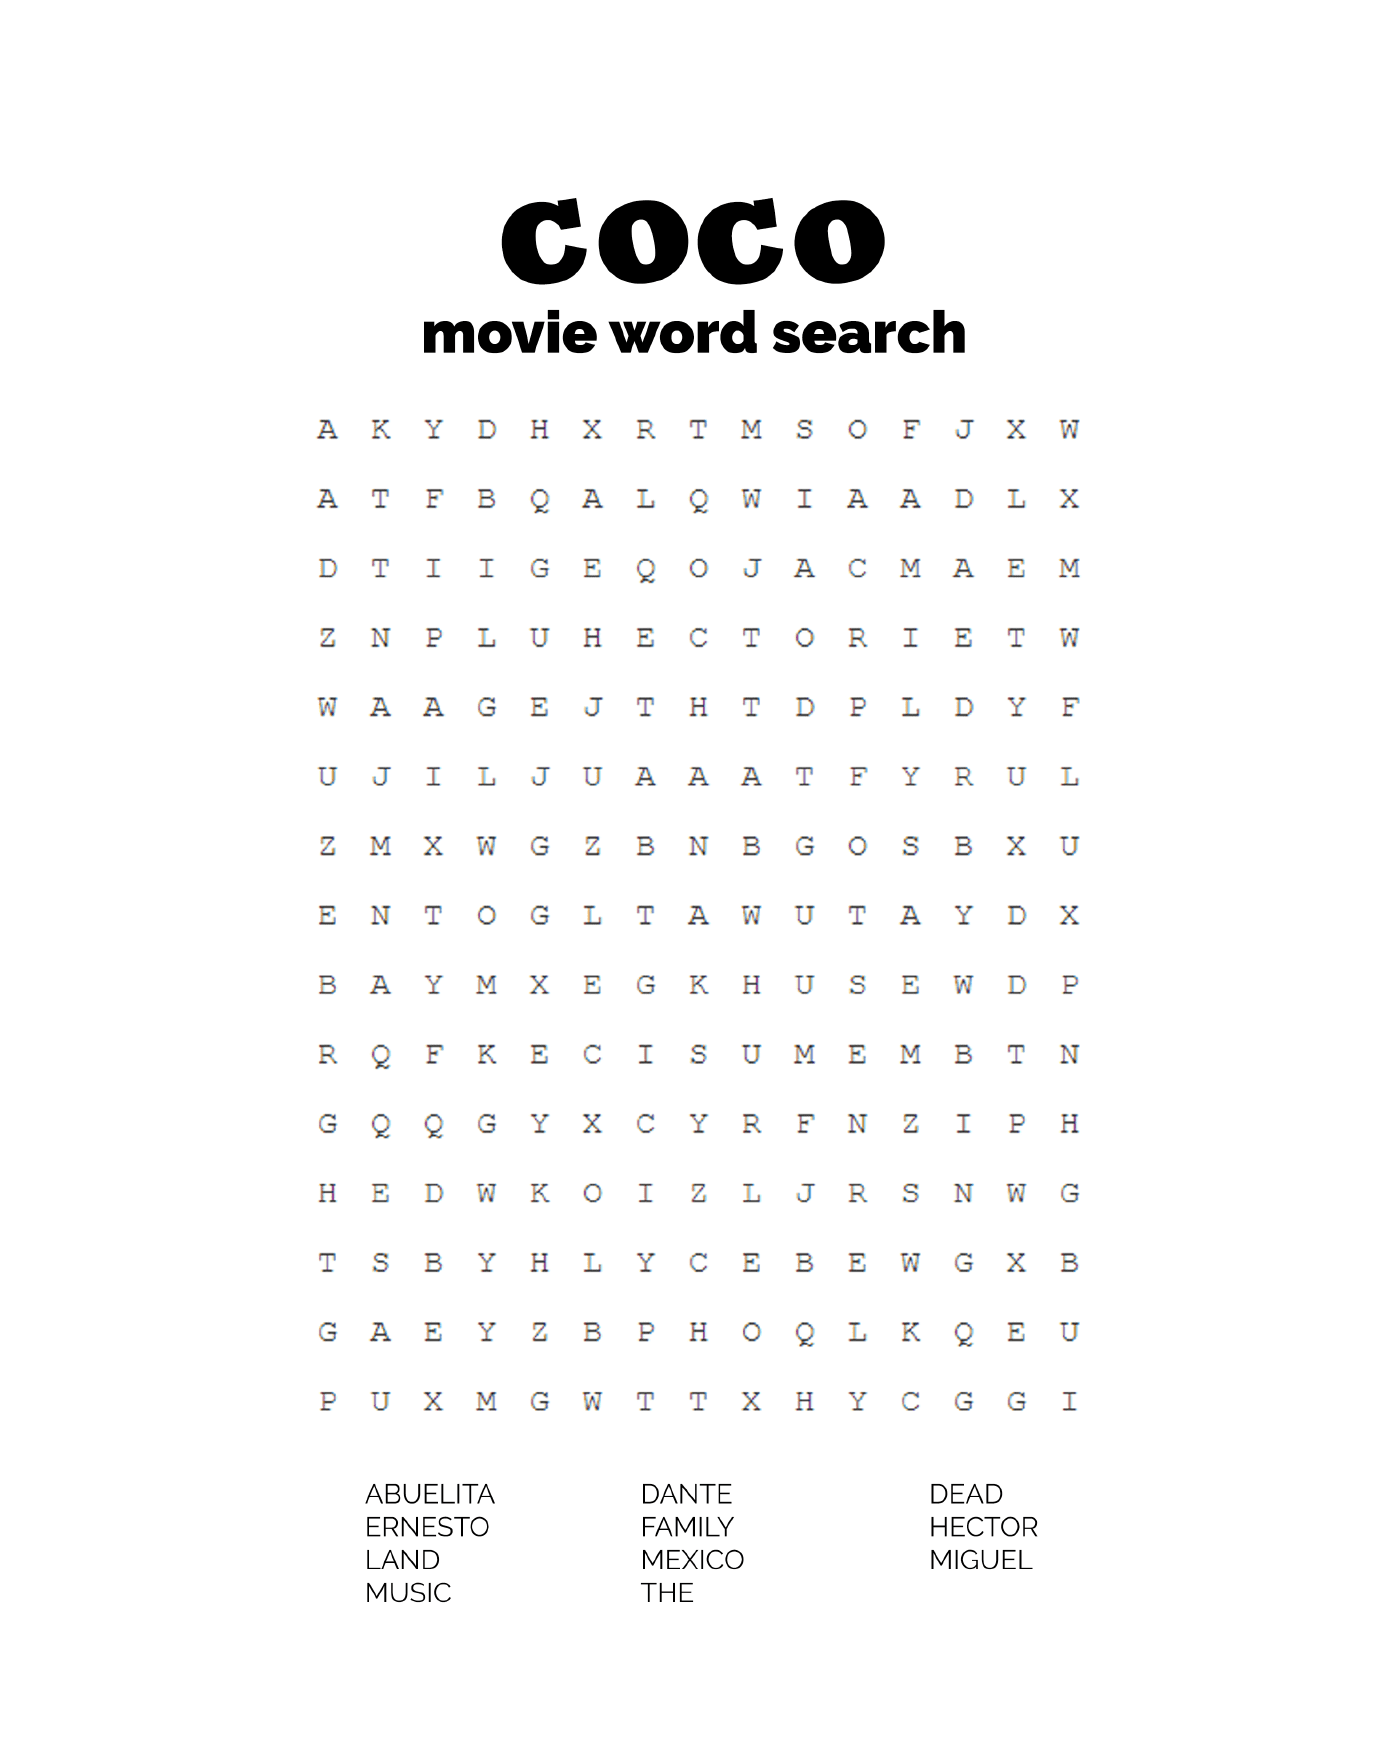   Recherche de mots basée sur le film Coco 